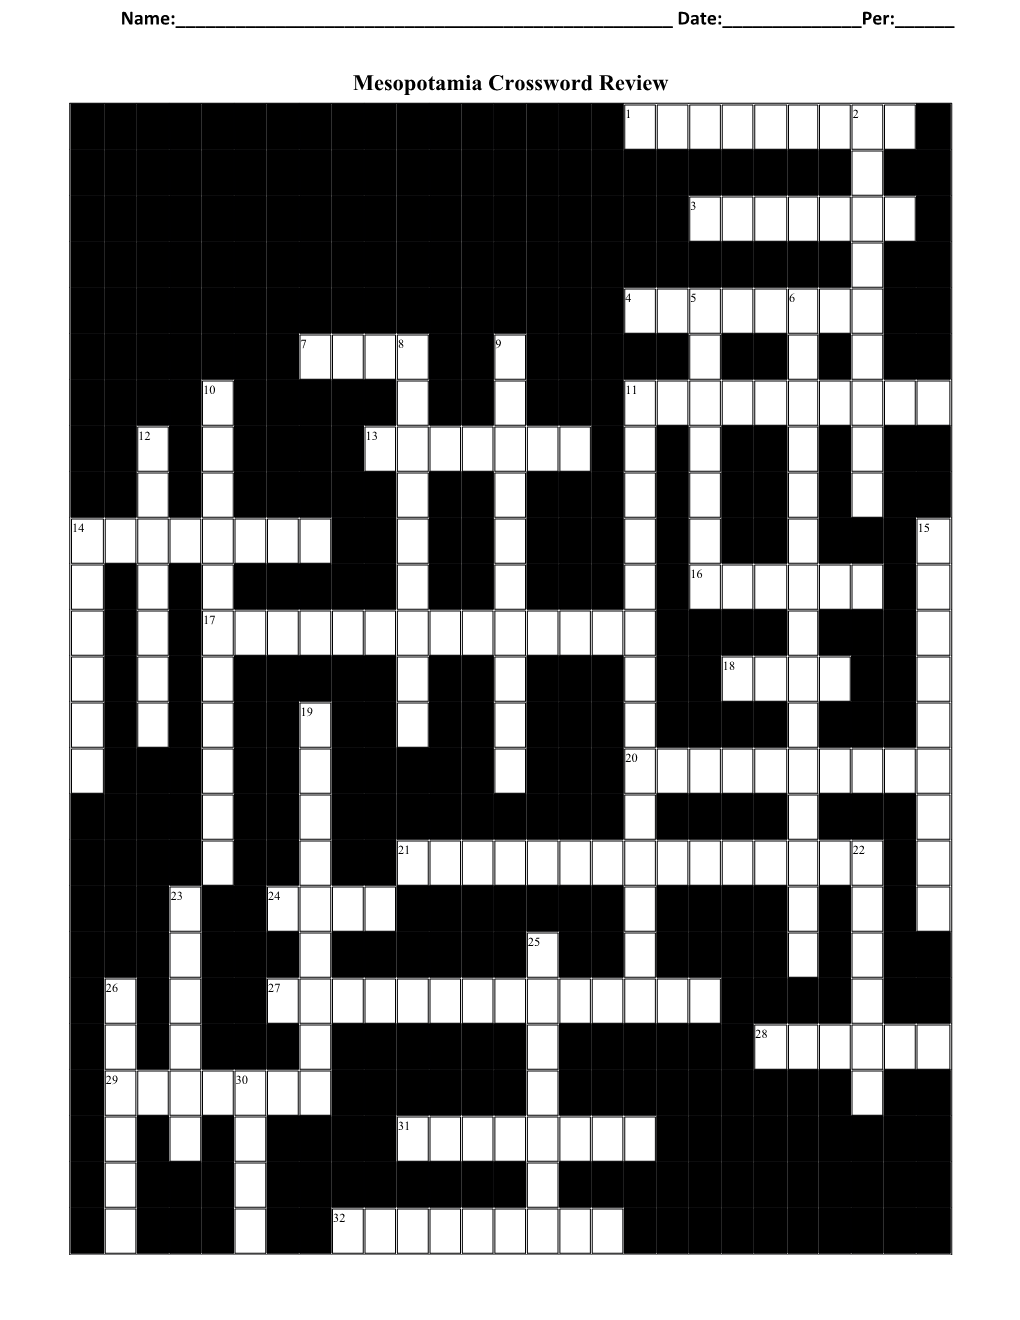 Mesopotamia Crossword Review